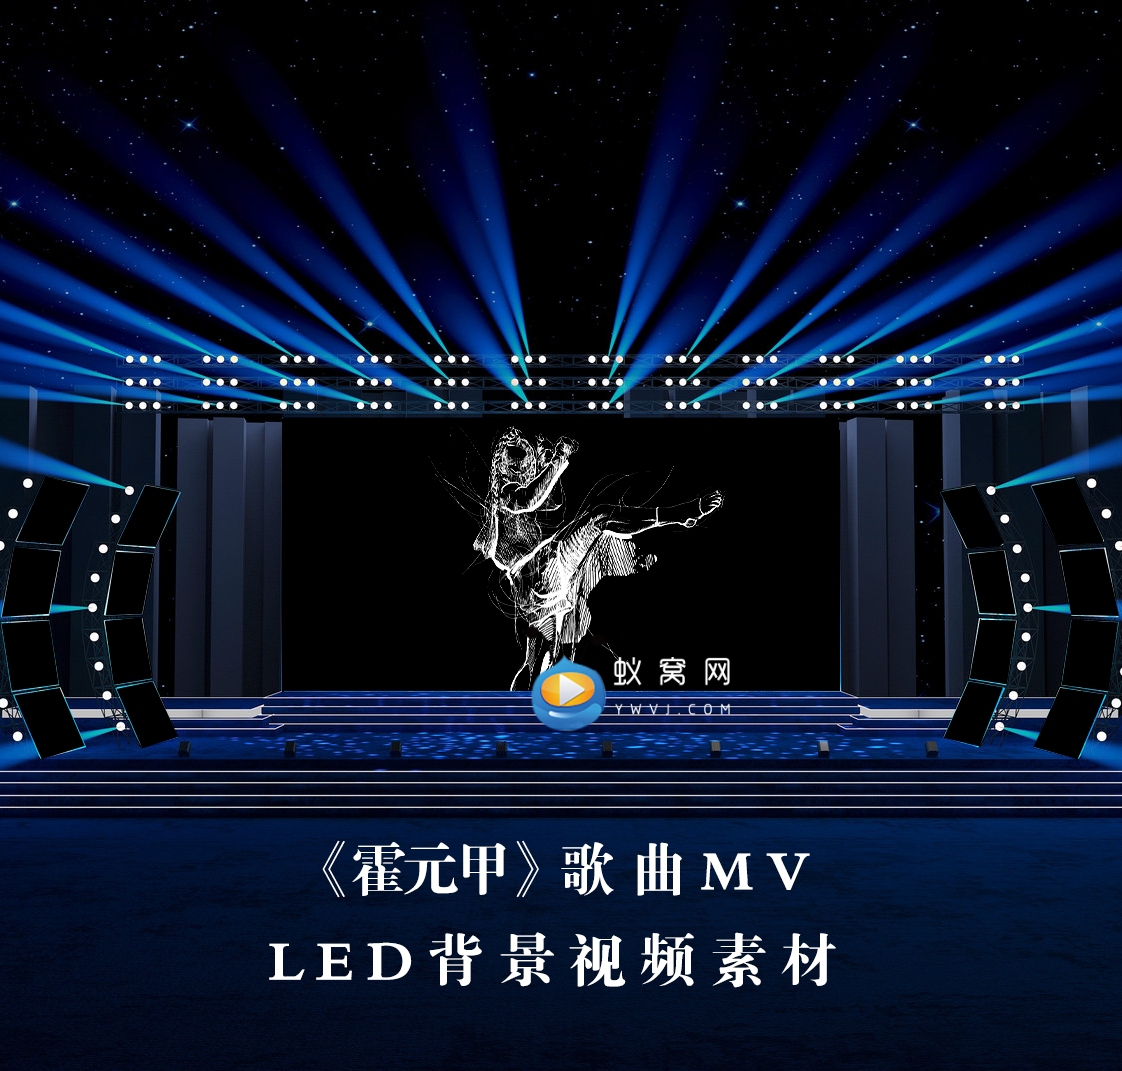 S4425 时代少年团唱 《霍元甲》 LED节目大屏舞美背景视频素材